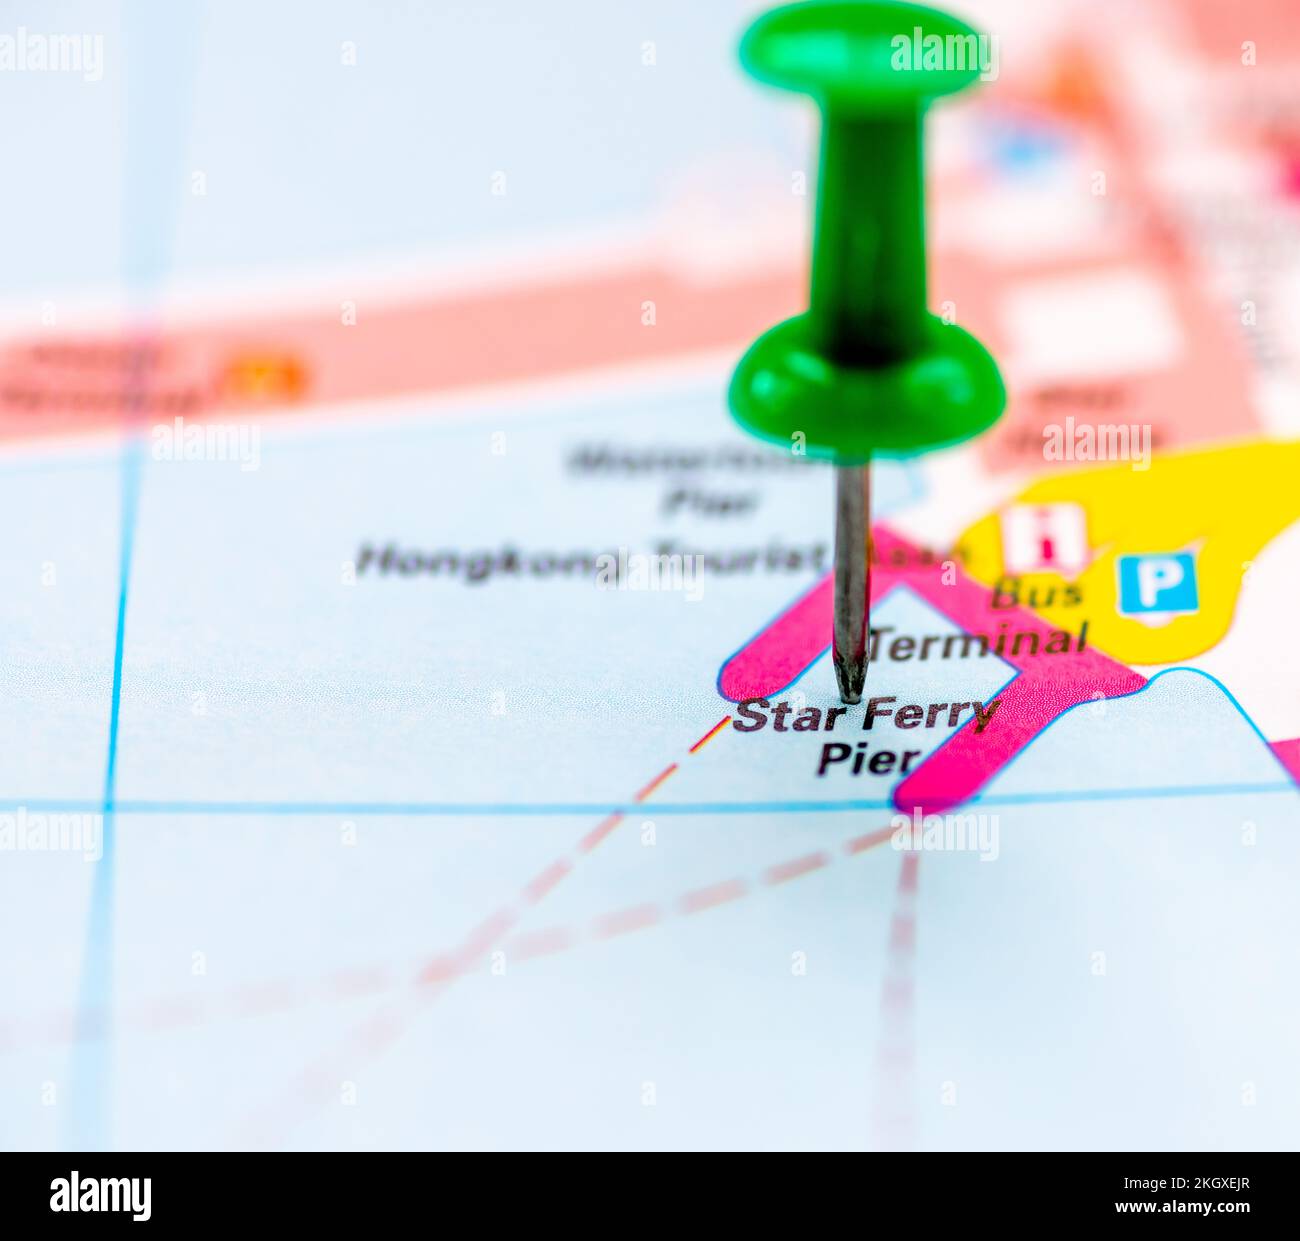 Die Kartenposition für den Star Ferry Pier, Hongkong, China, markiert mit einer grünen Stecknadel. Stockfoto